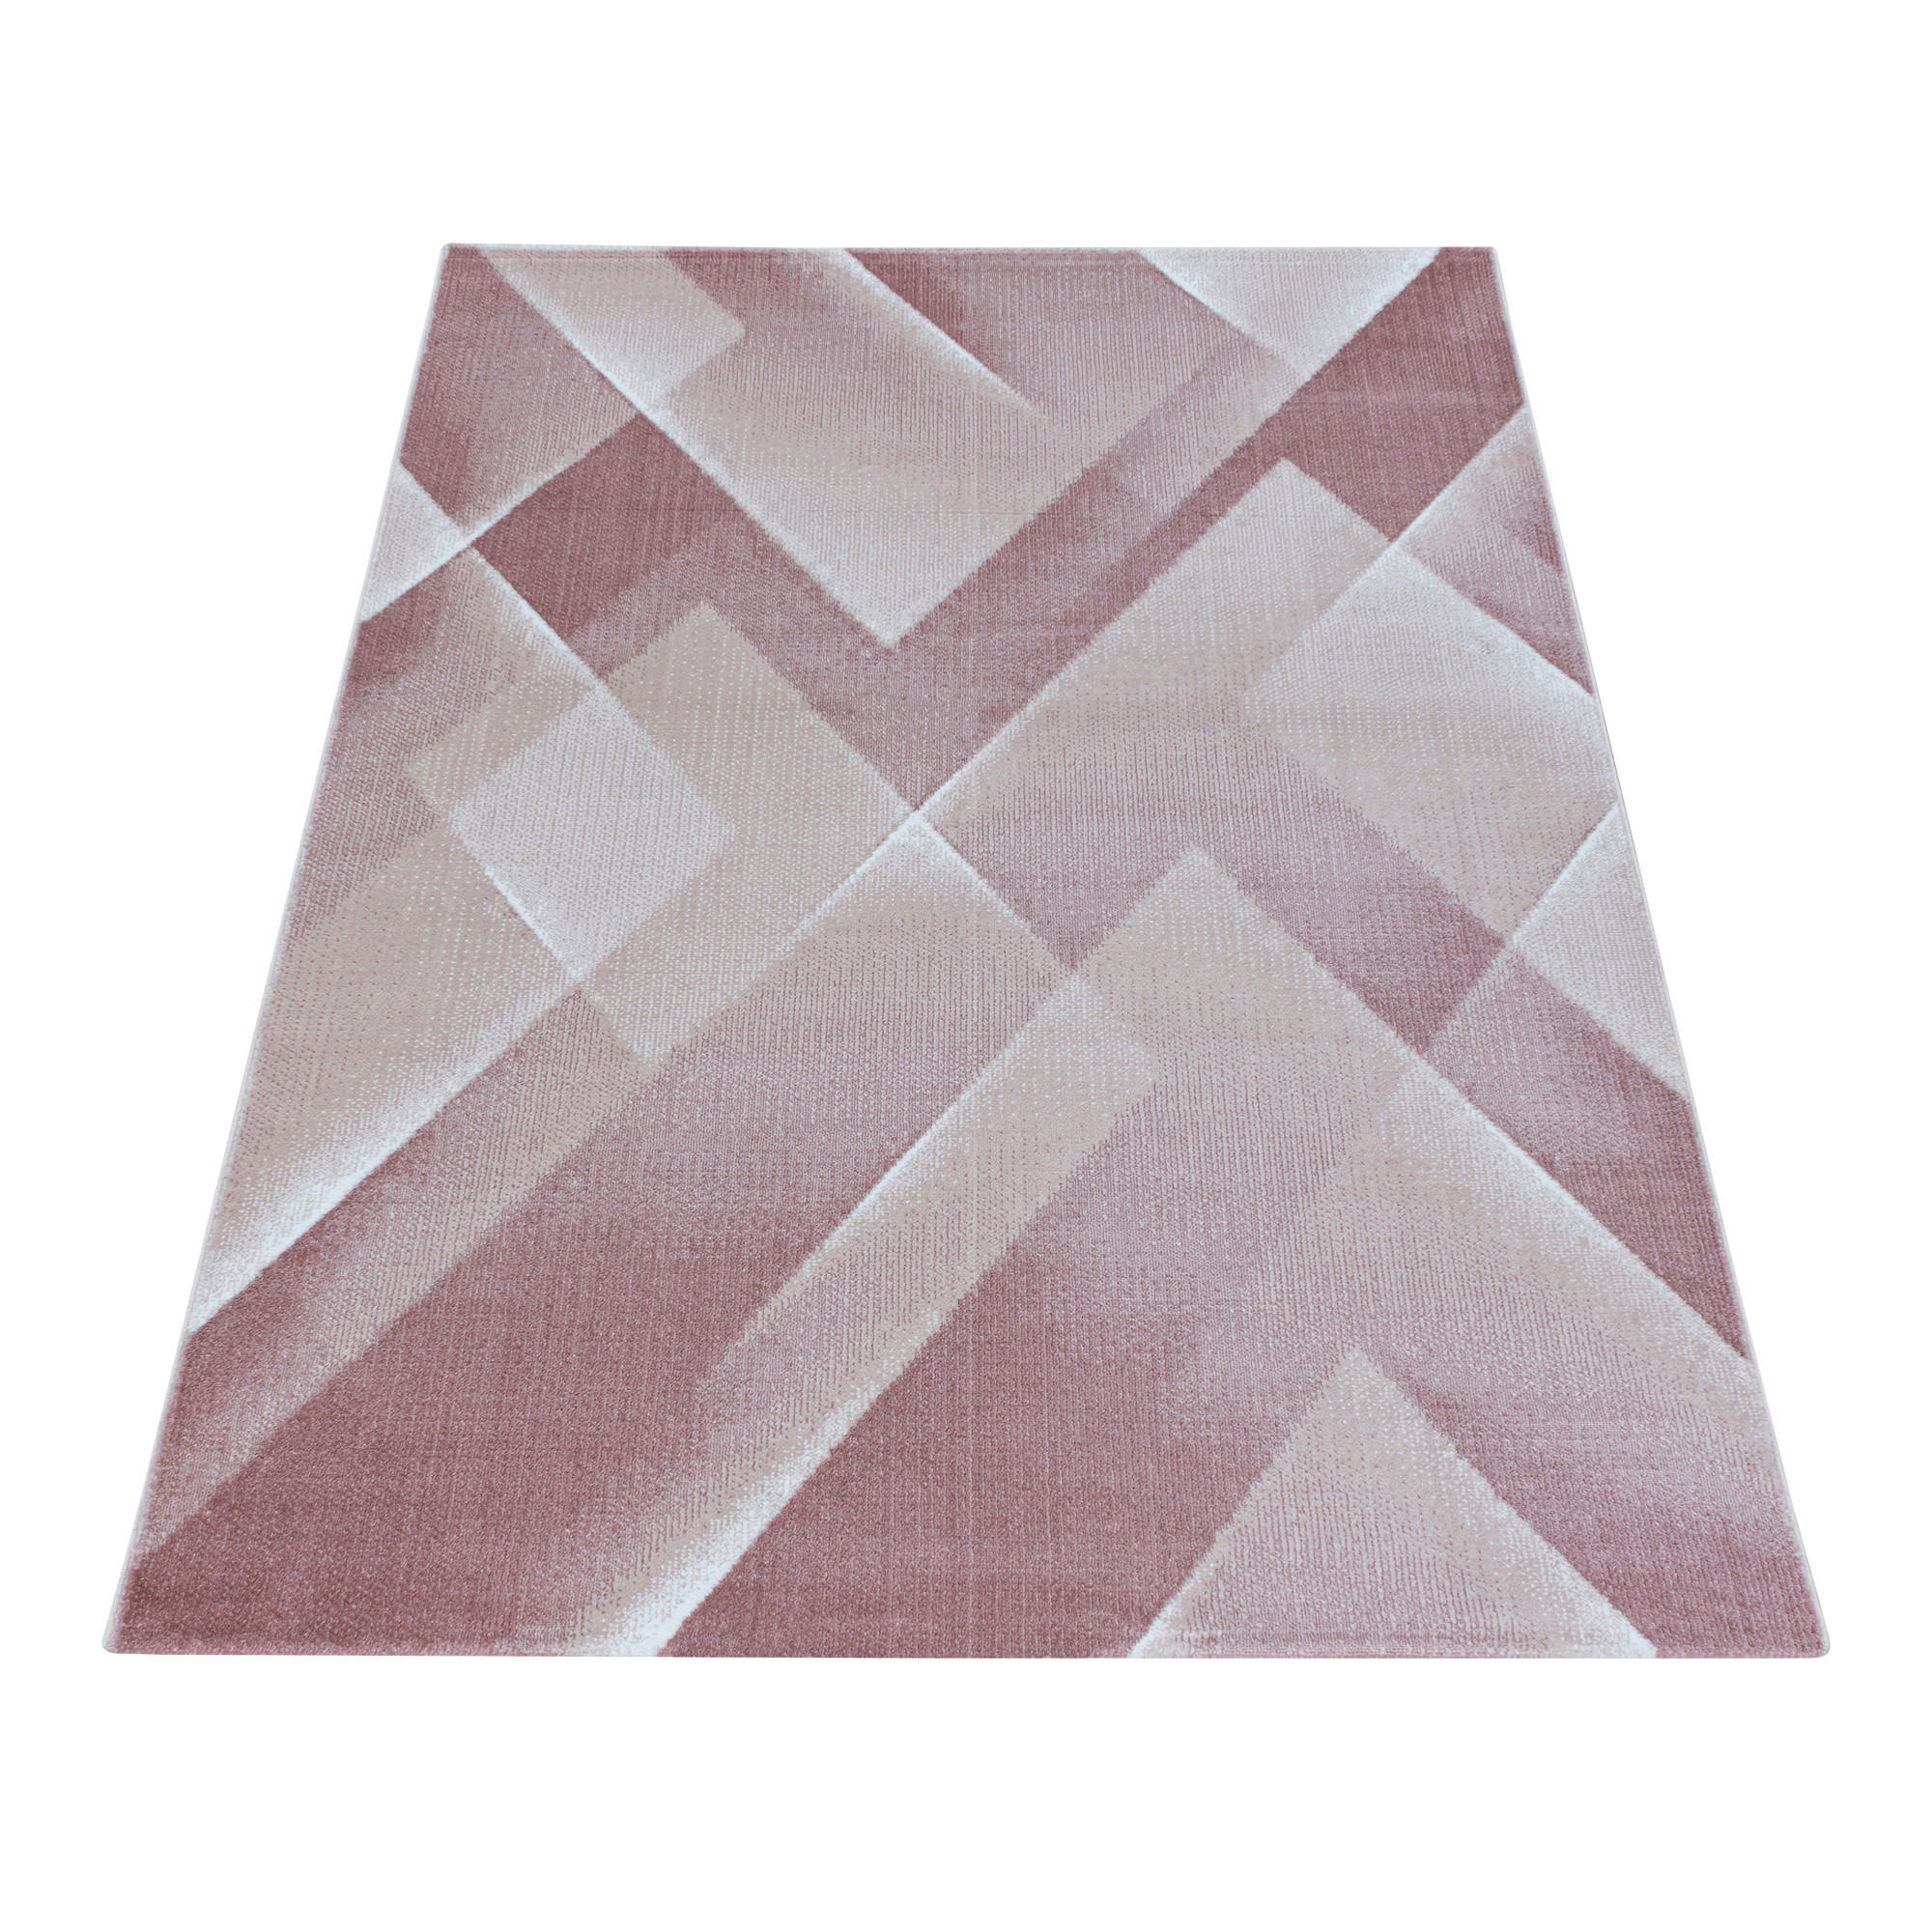 WEBTEPPICH  80/150 cm  Pink   - Pink, Design, Textil (80/150cm) - Novel